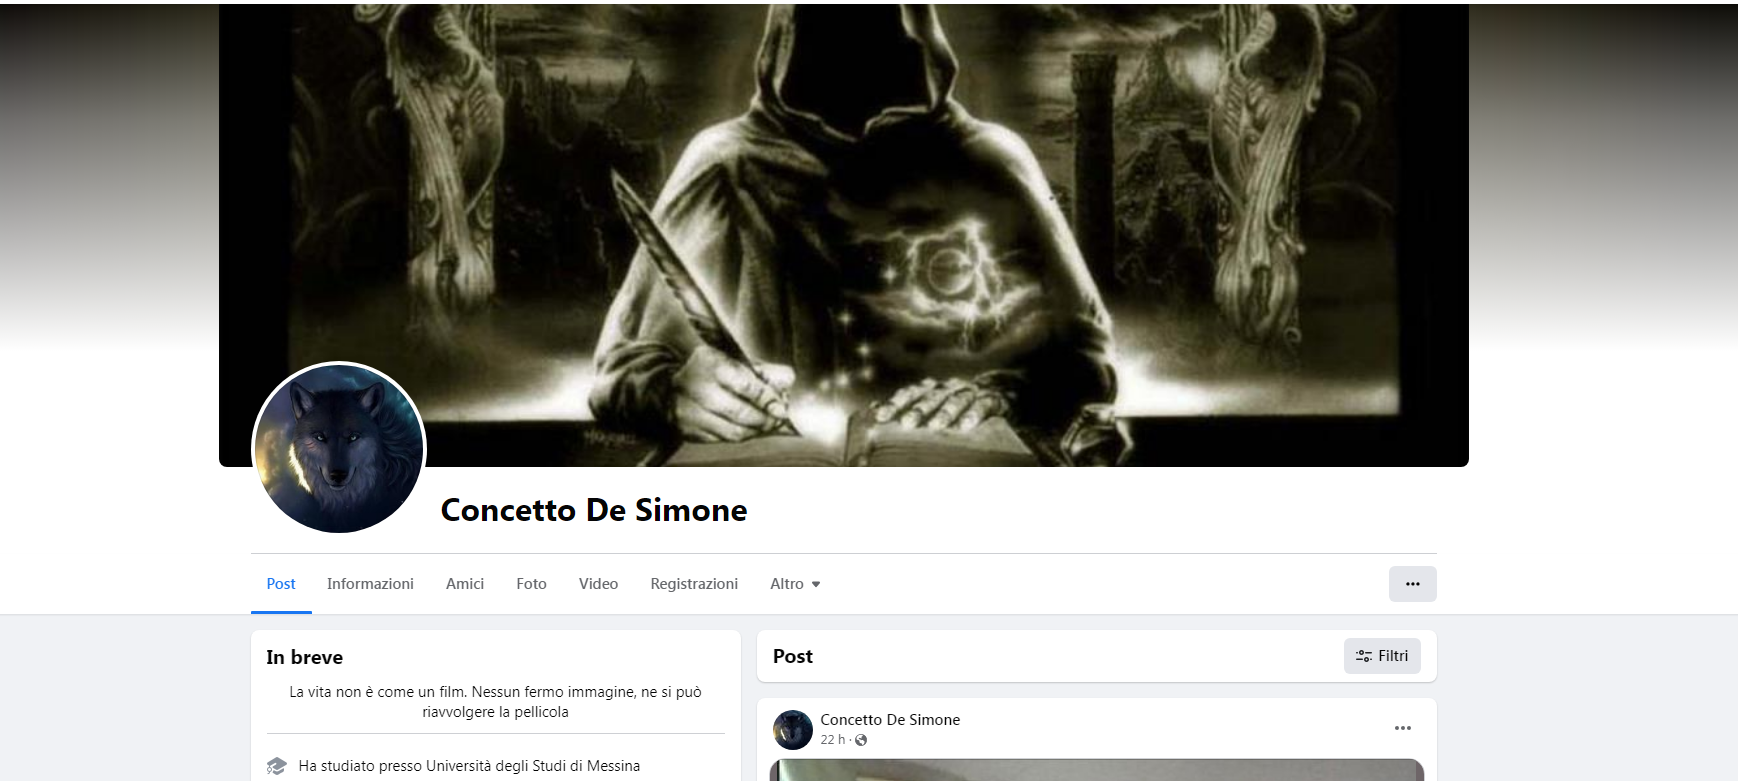 De Simone segnala attacchi sul web: “Offese incredibili contro di me”